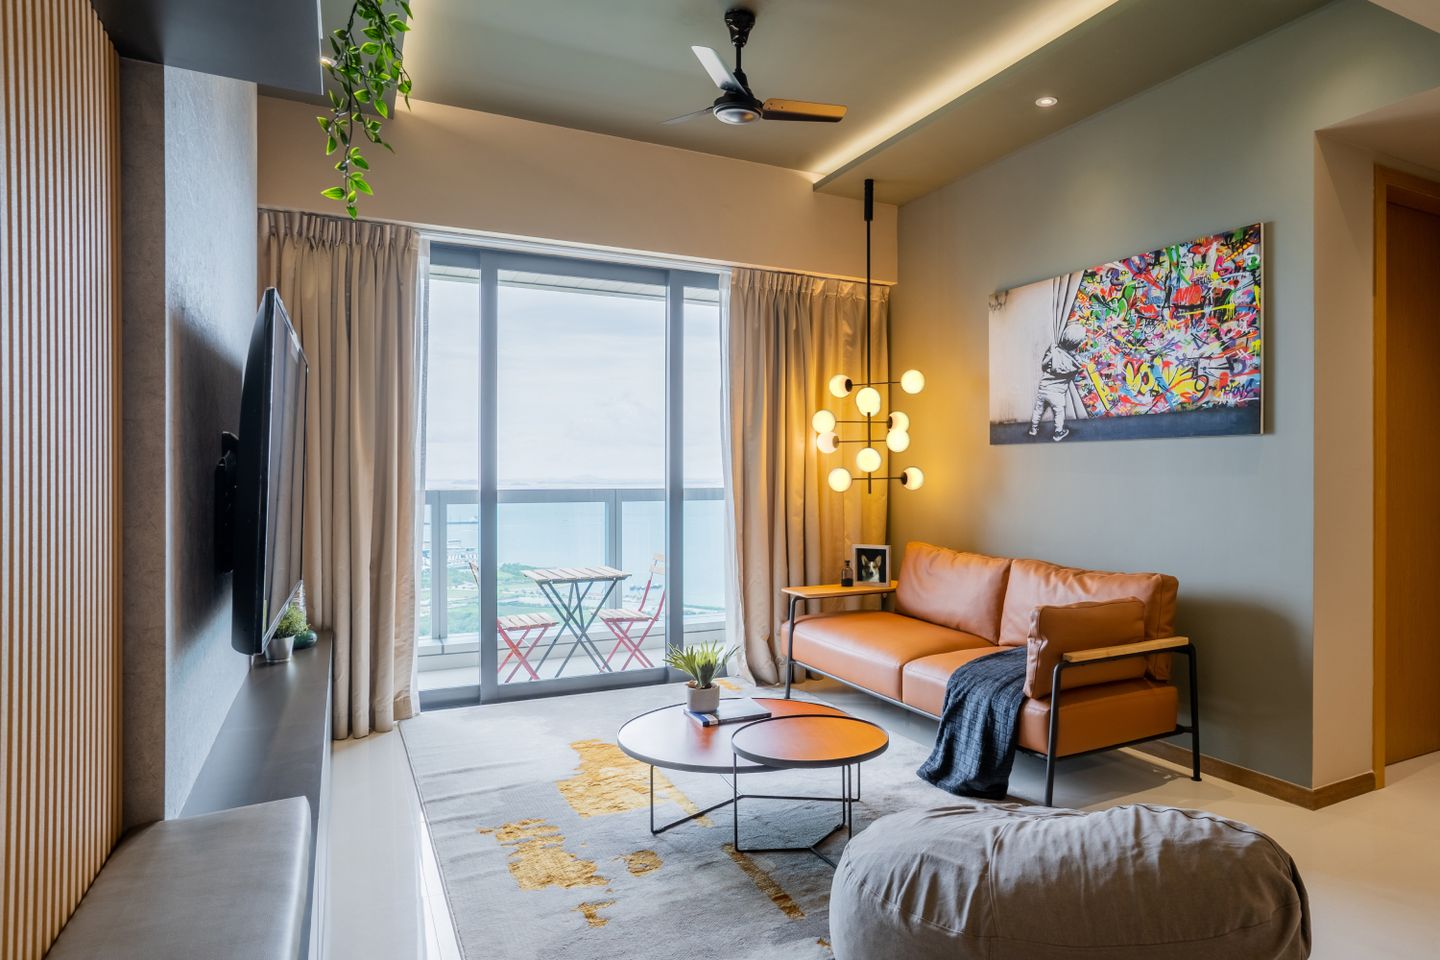 Contemporary Living Room Design With A TV Unit - Livspace